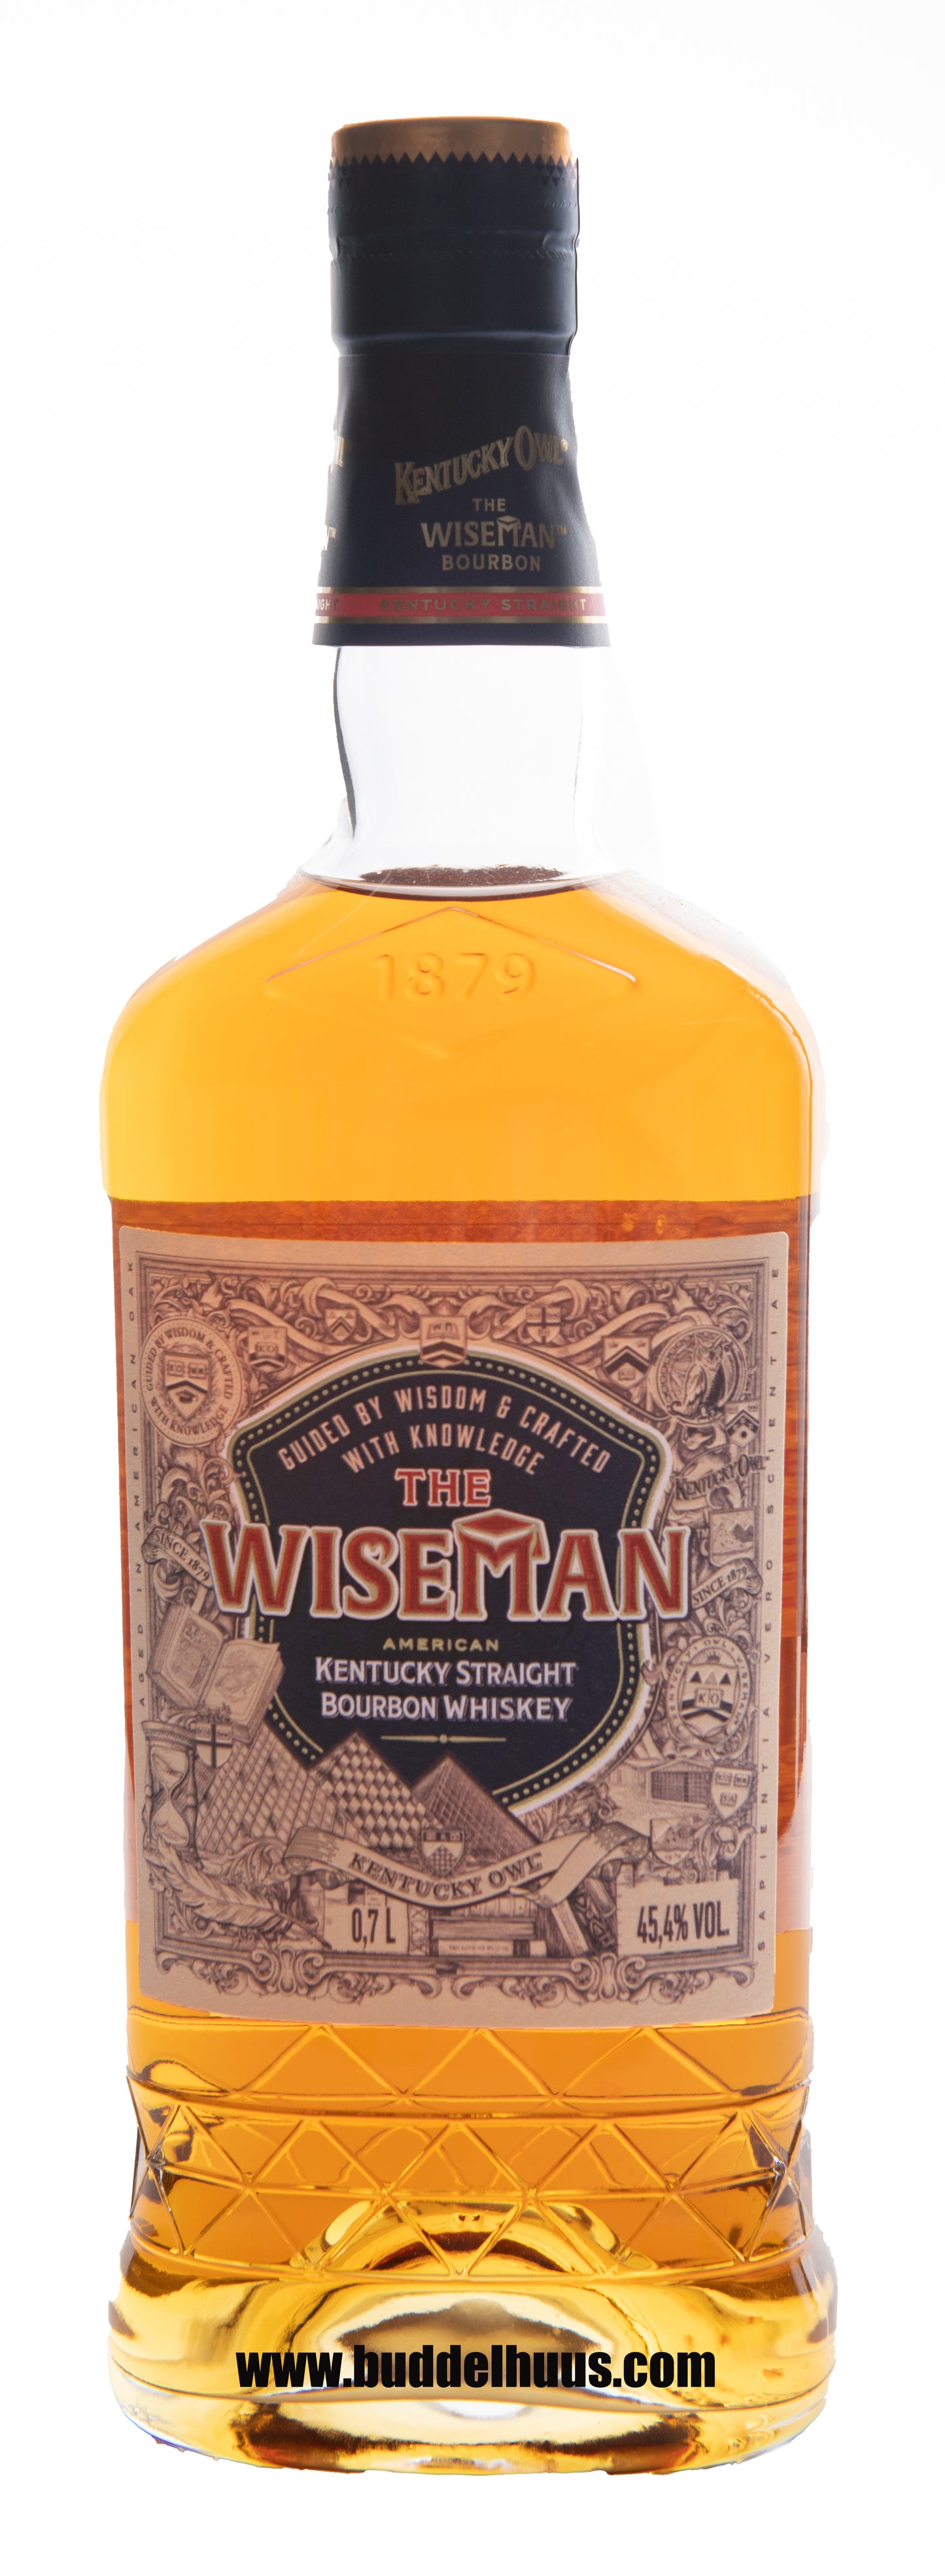 Kentucky Owl Wiseman`s Bourbon Whiskey